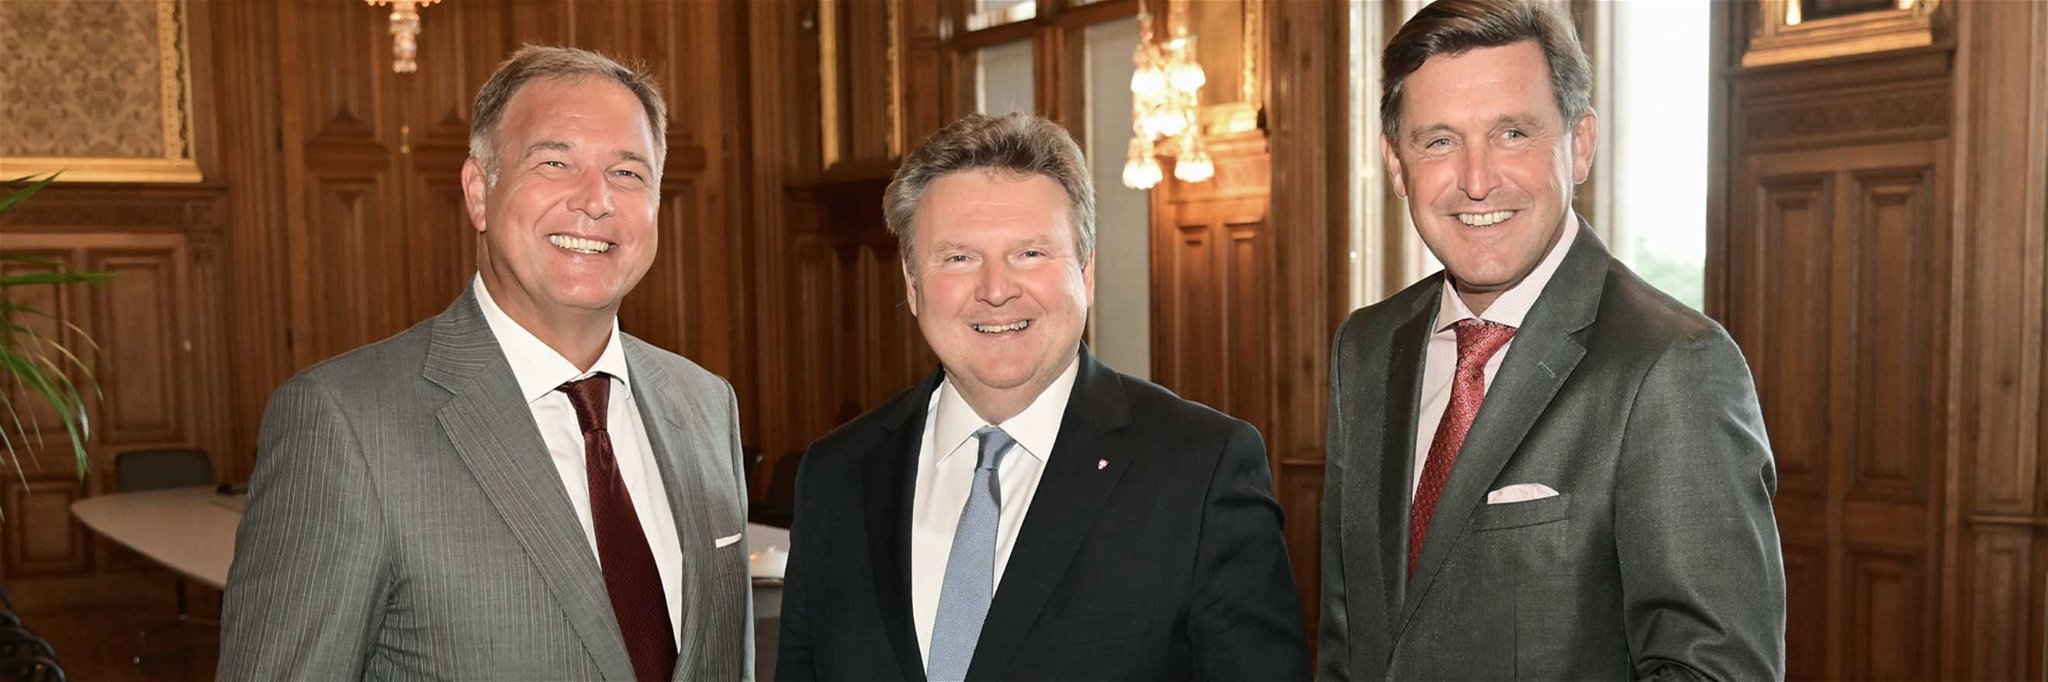 Bürgermeister Michael Ludwig (Mitte), Wirtschaftskammer-Wien-Präsident Walter Ruck (l.) und Finanzstadtrat Peter Hanke.